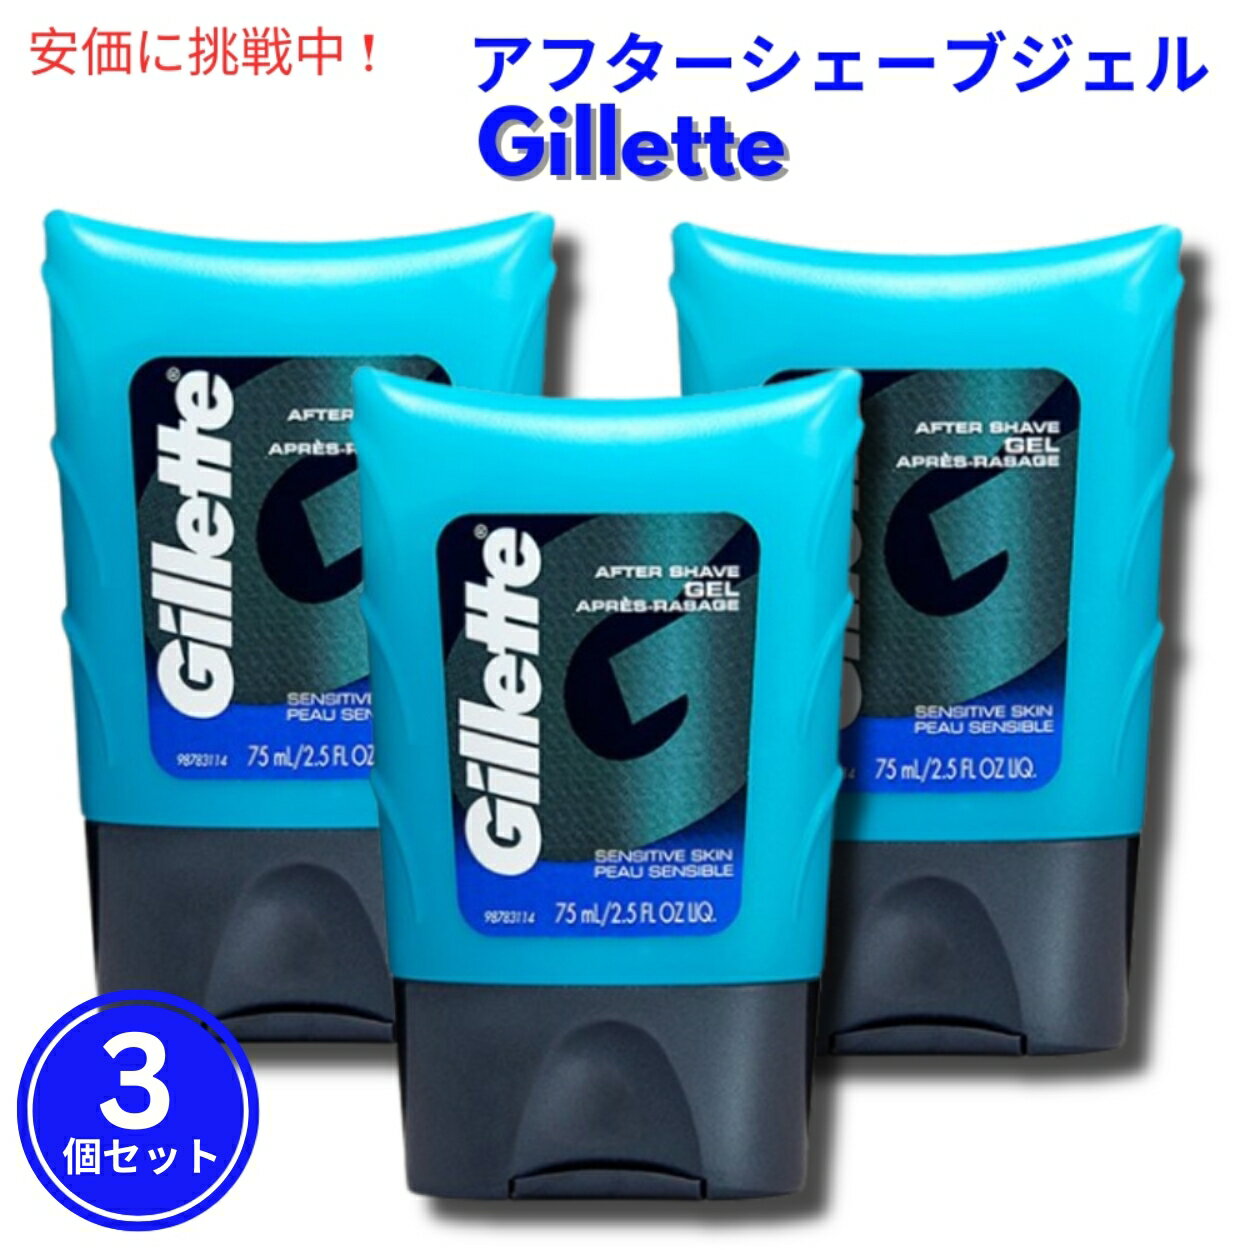 【3個セット】Gillette Aftershave Gel for Men Light Fragrance 2.5 oz 敏感肌用 ライトフレグランス ジレット アフターシェーブジェル